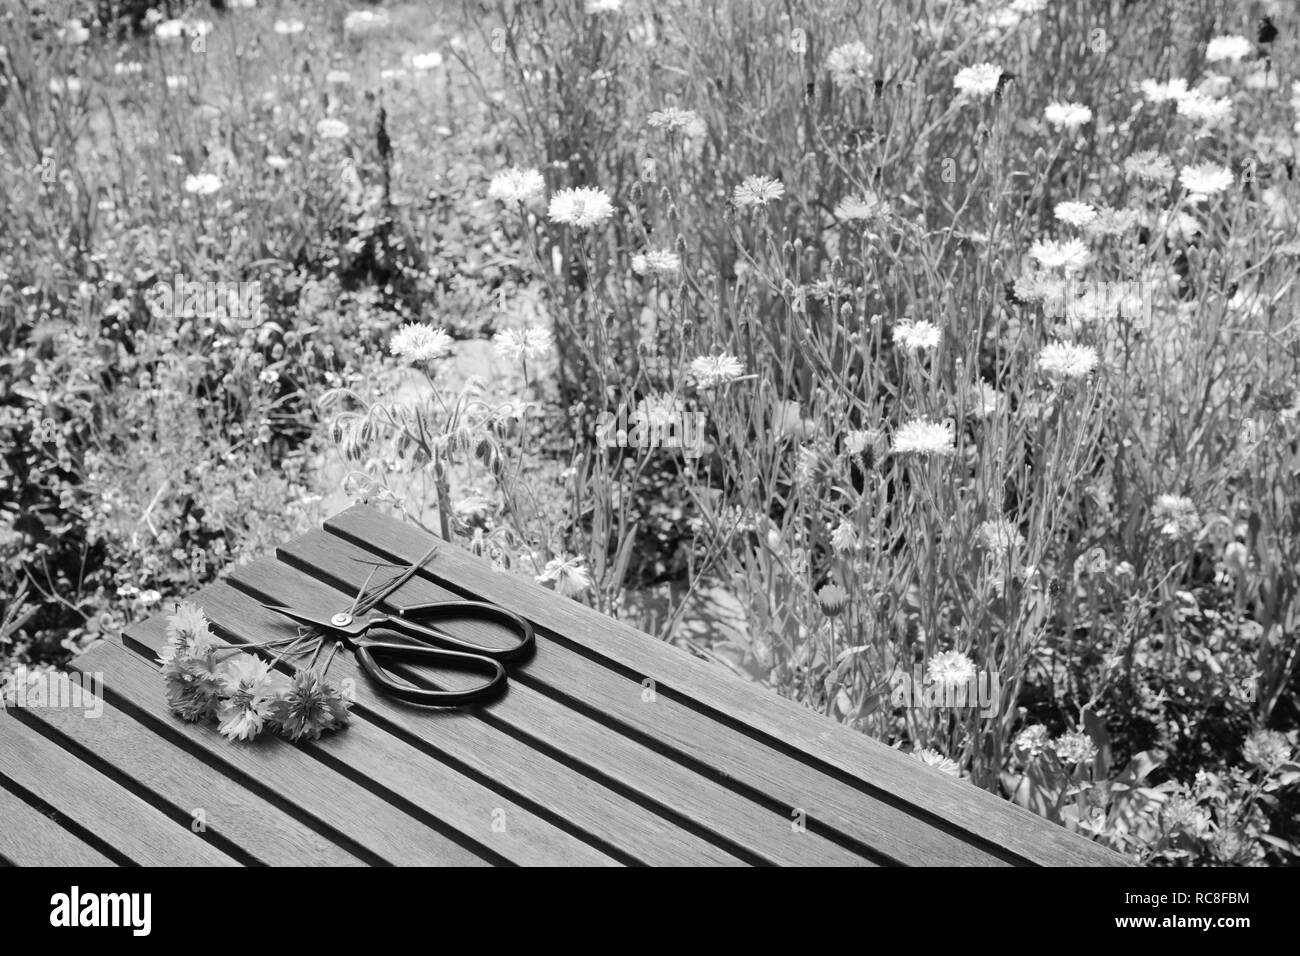 Couper barbeaux et jardin ciseaux sur une table en bois dans un jardin de fleurs sauvages - traitement monochrome Banque D'Images